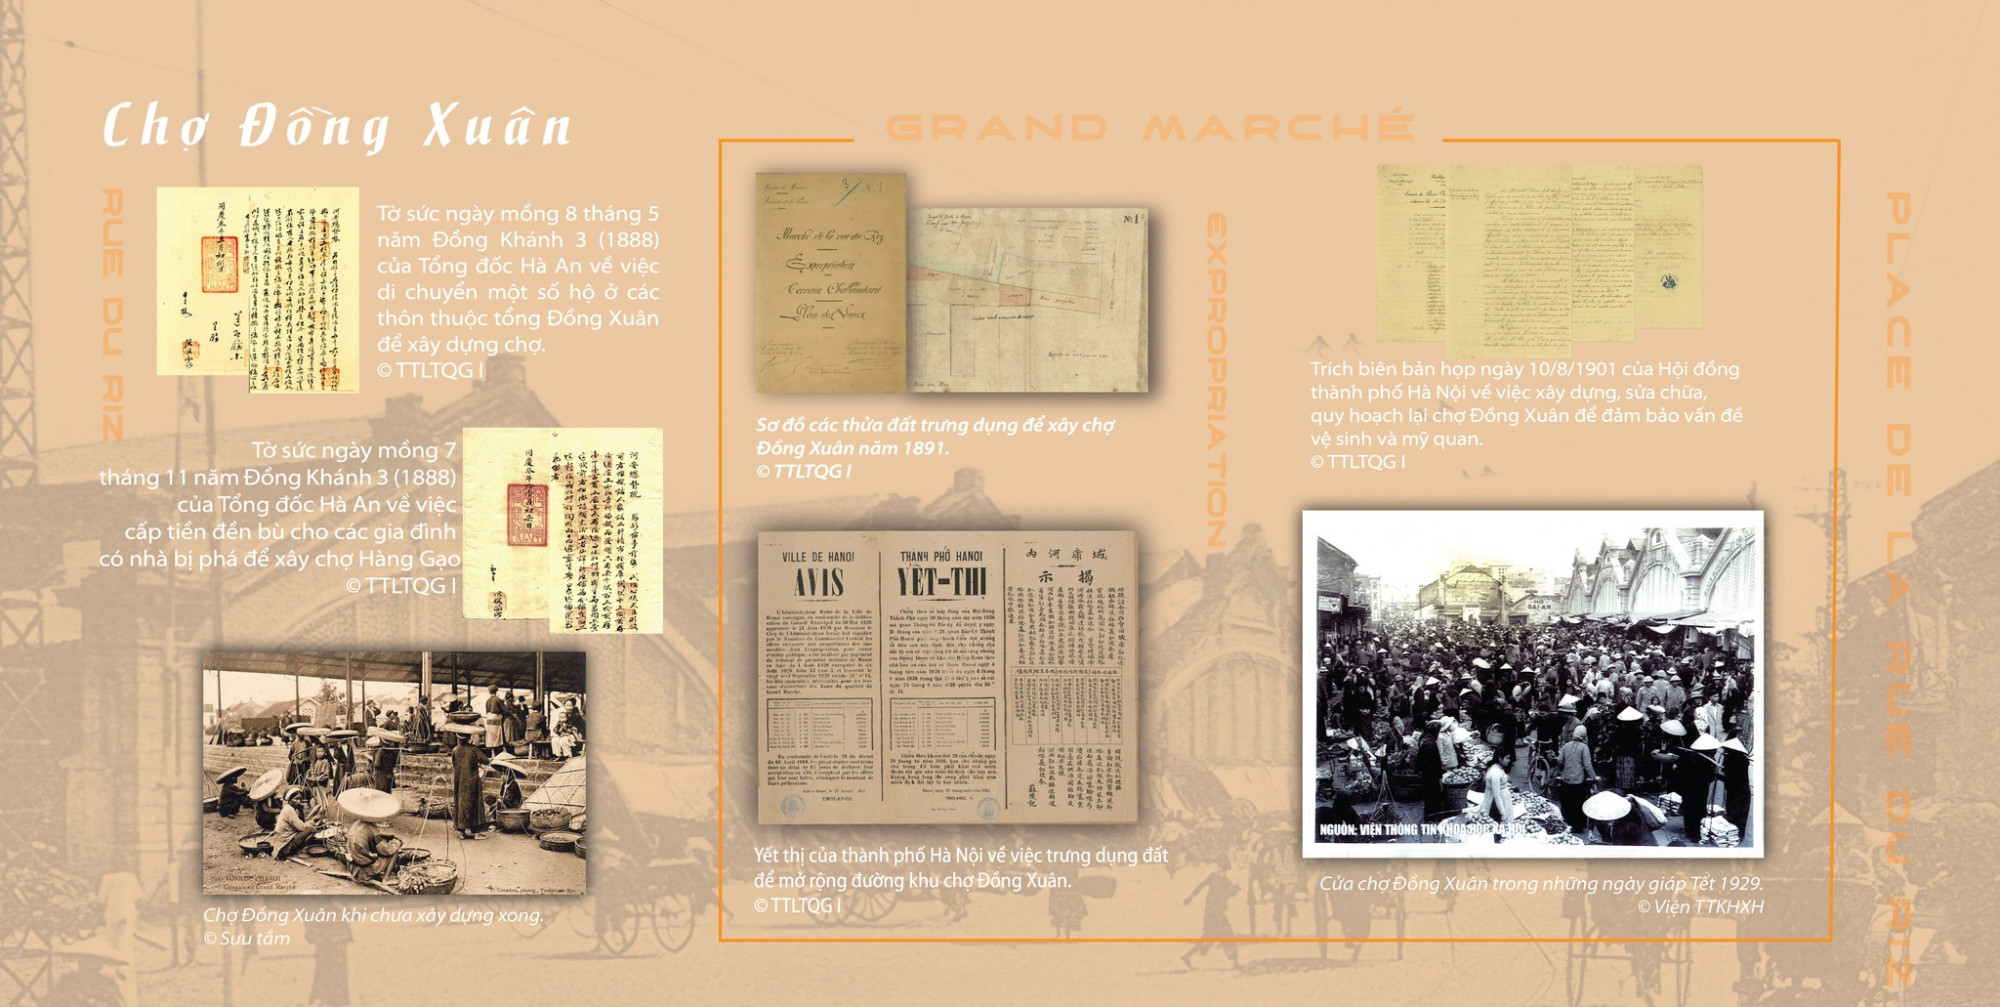 Bảng thông tin về chợ Đồng Xuân bao gồm tờ sức, sơ đồ, yết thị, biên bản